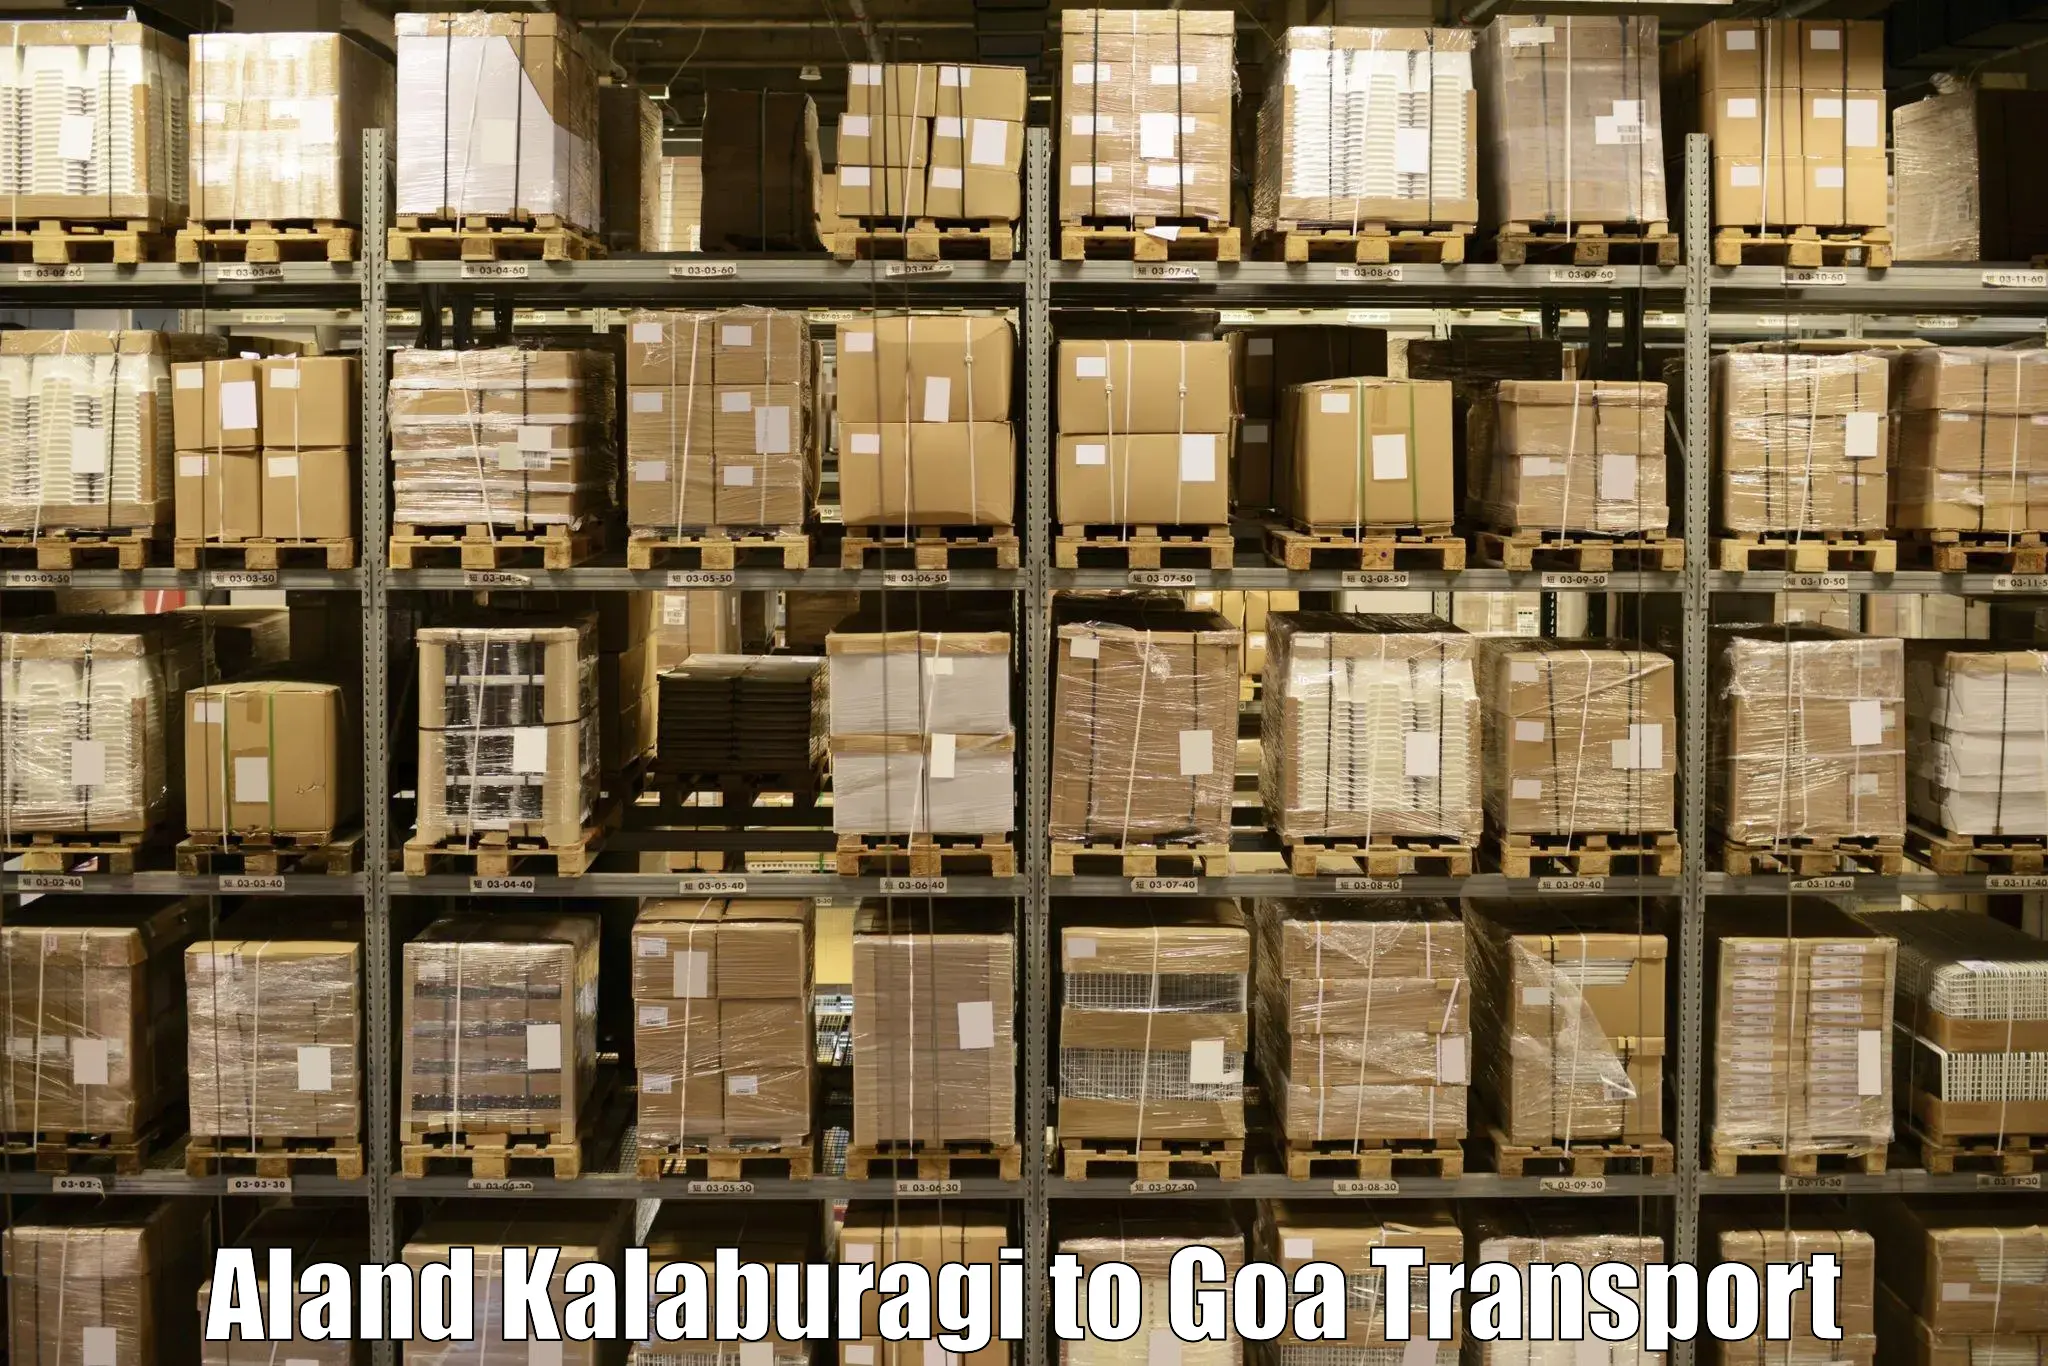 Shipping partner Aland Kalaburagi to Vasco da Gama